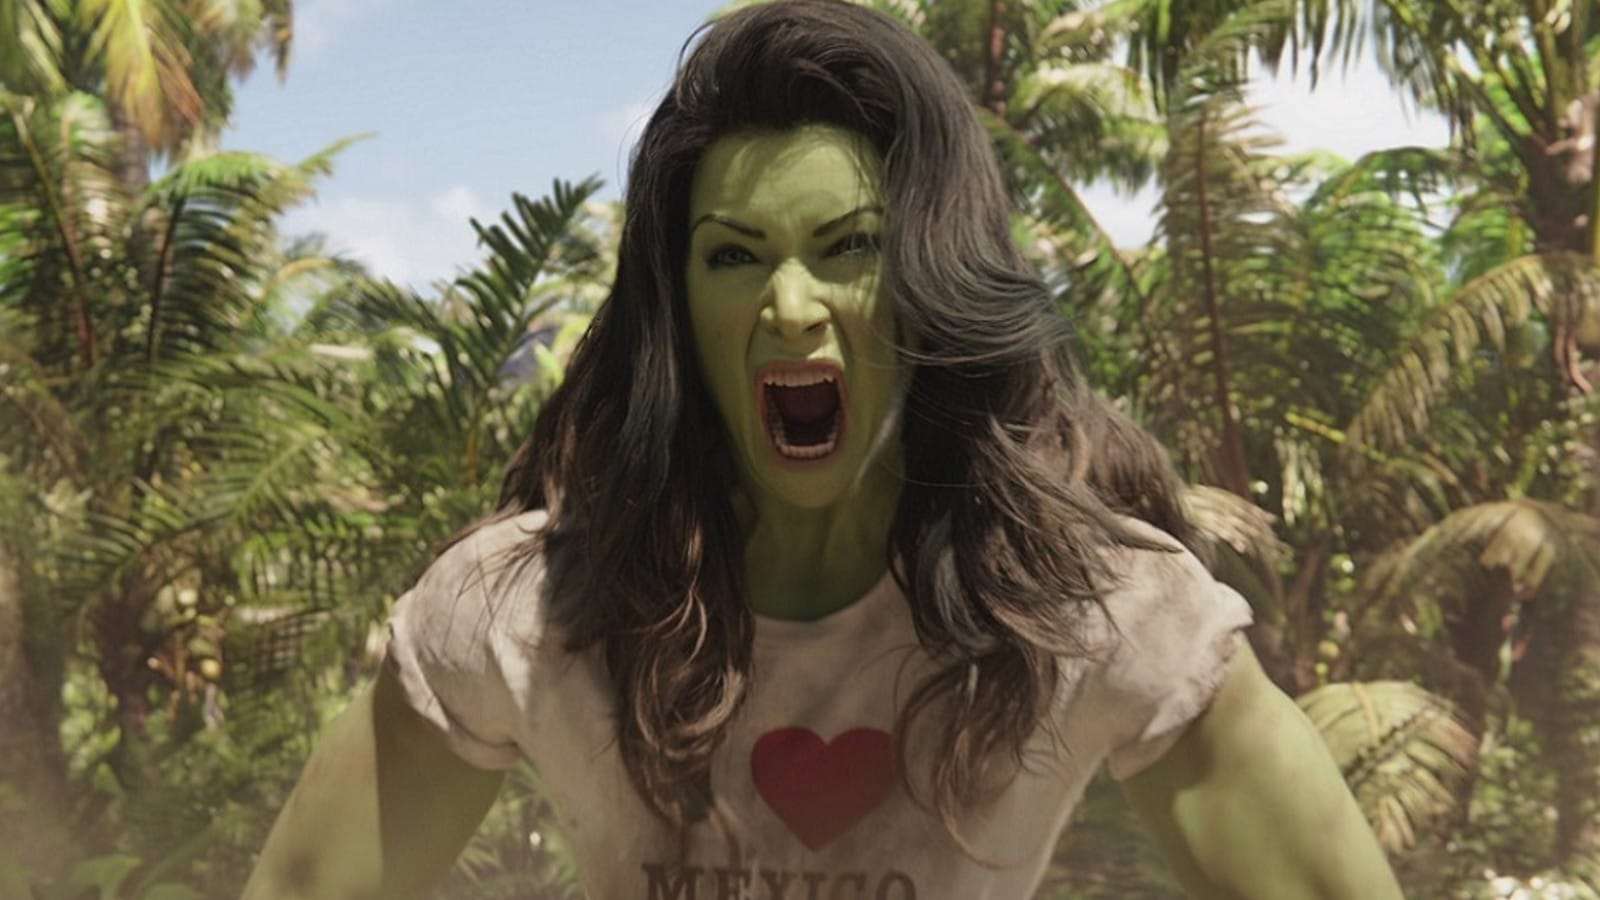 A still from She-Hulk